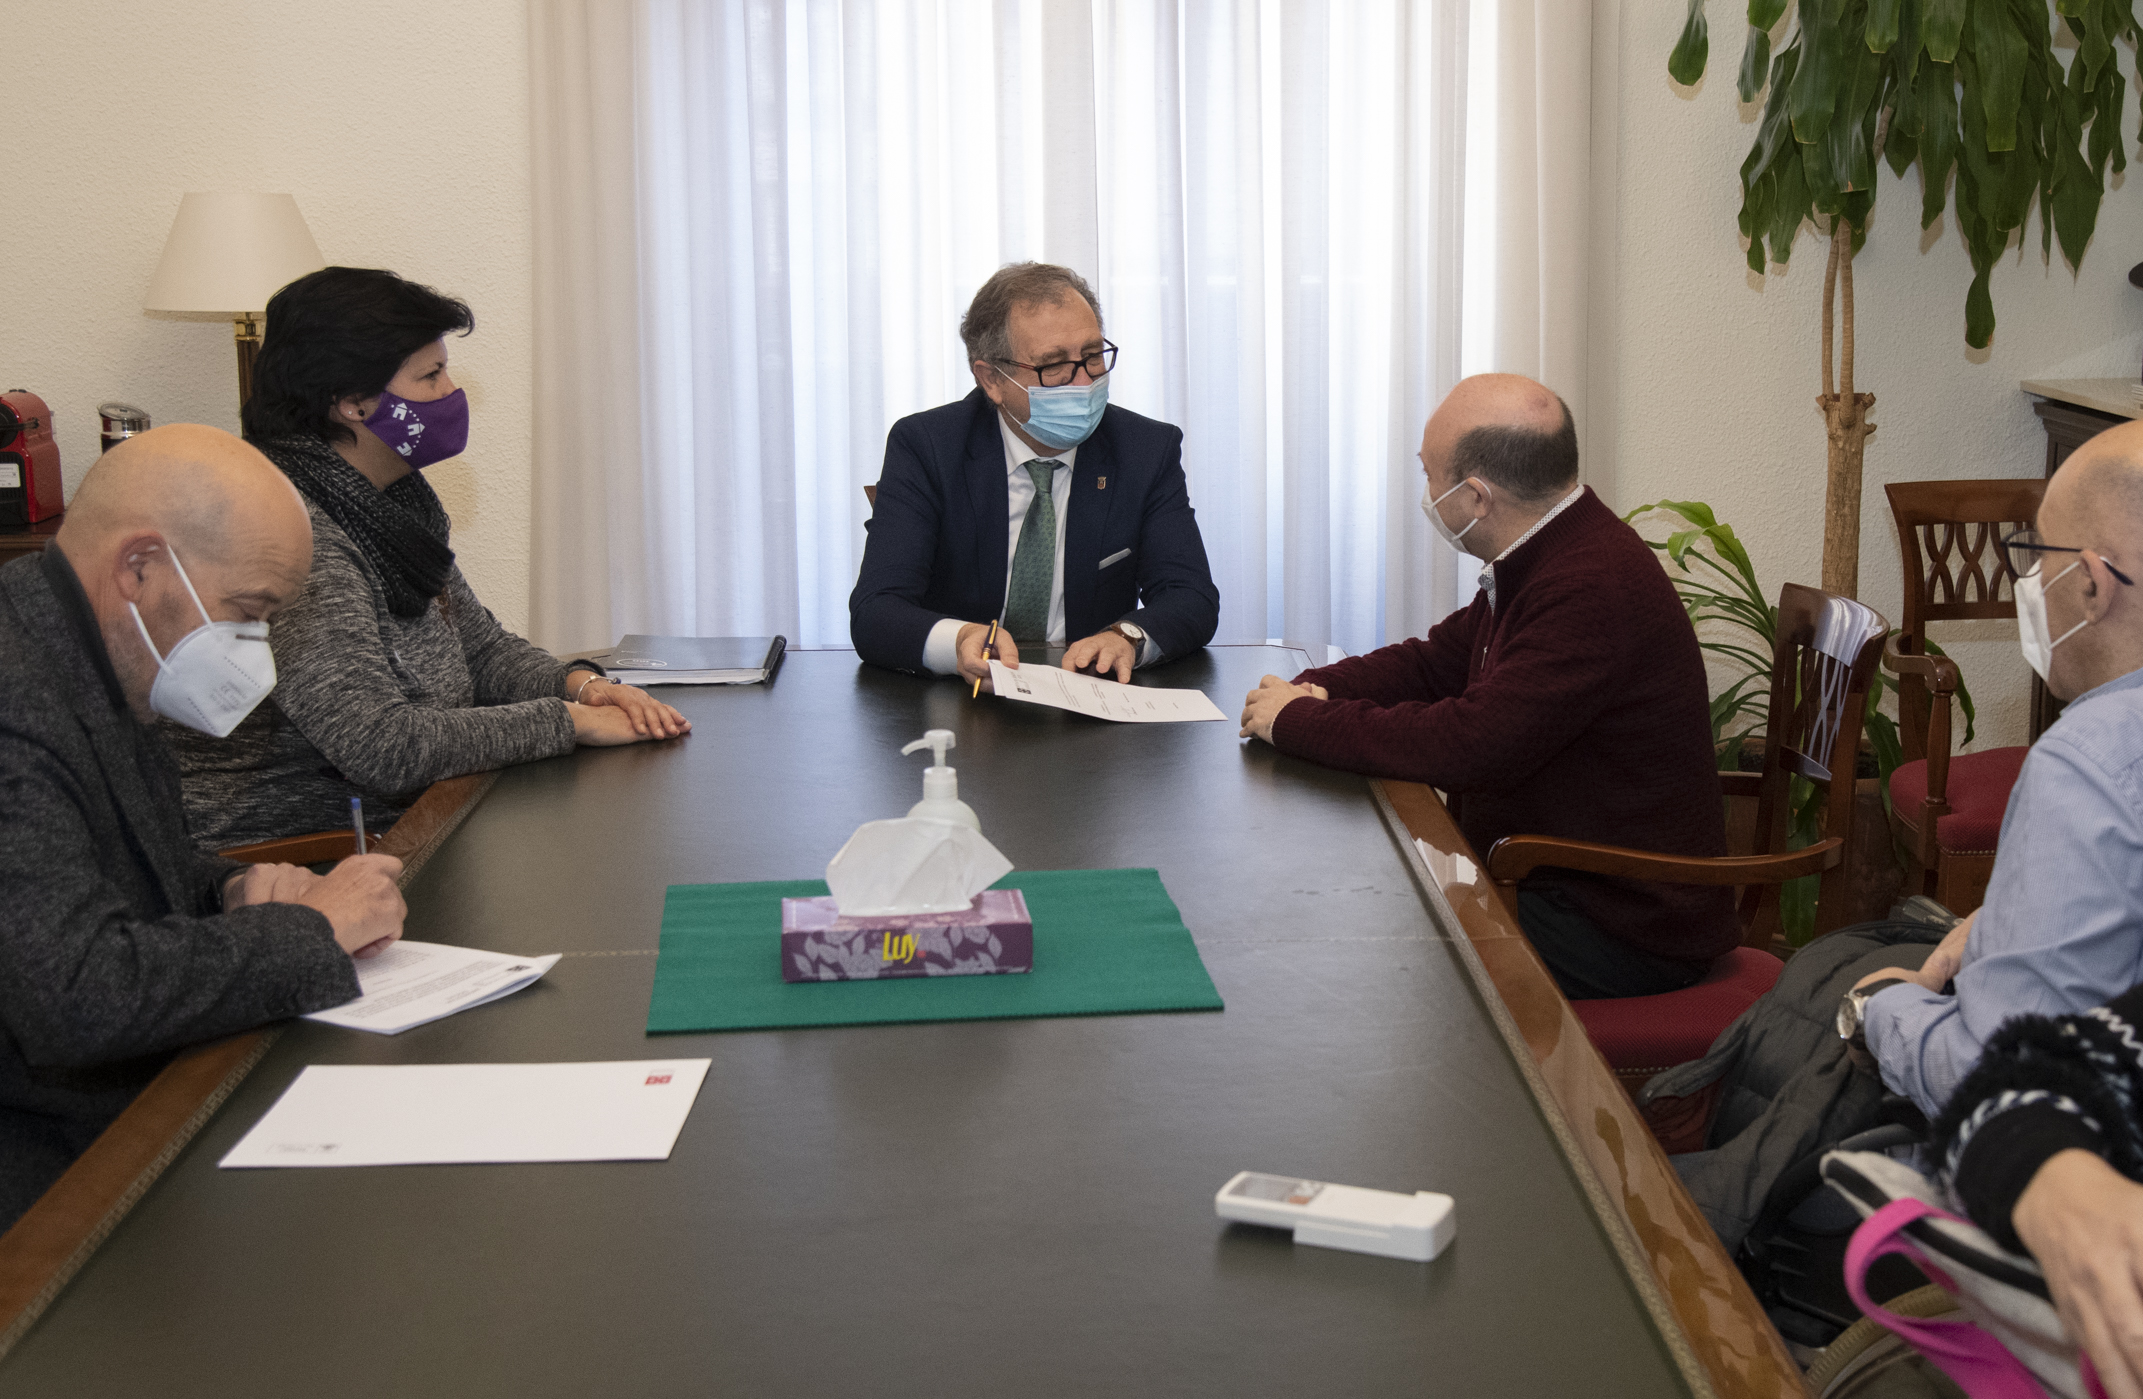 La Diputación de Castellón destina 45.000 euros a mejorar las instalaciones de la residencia ‘Maset’ de Frater